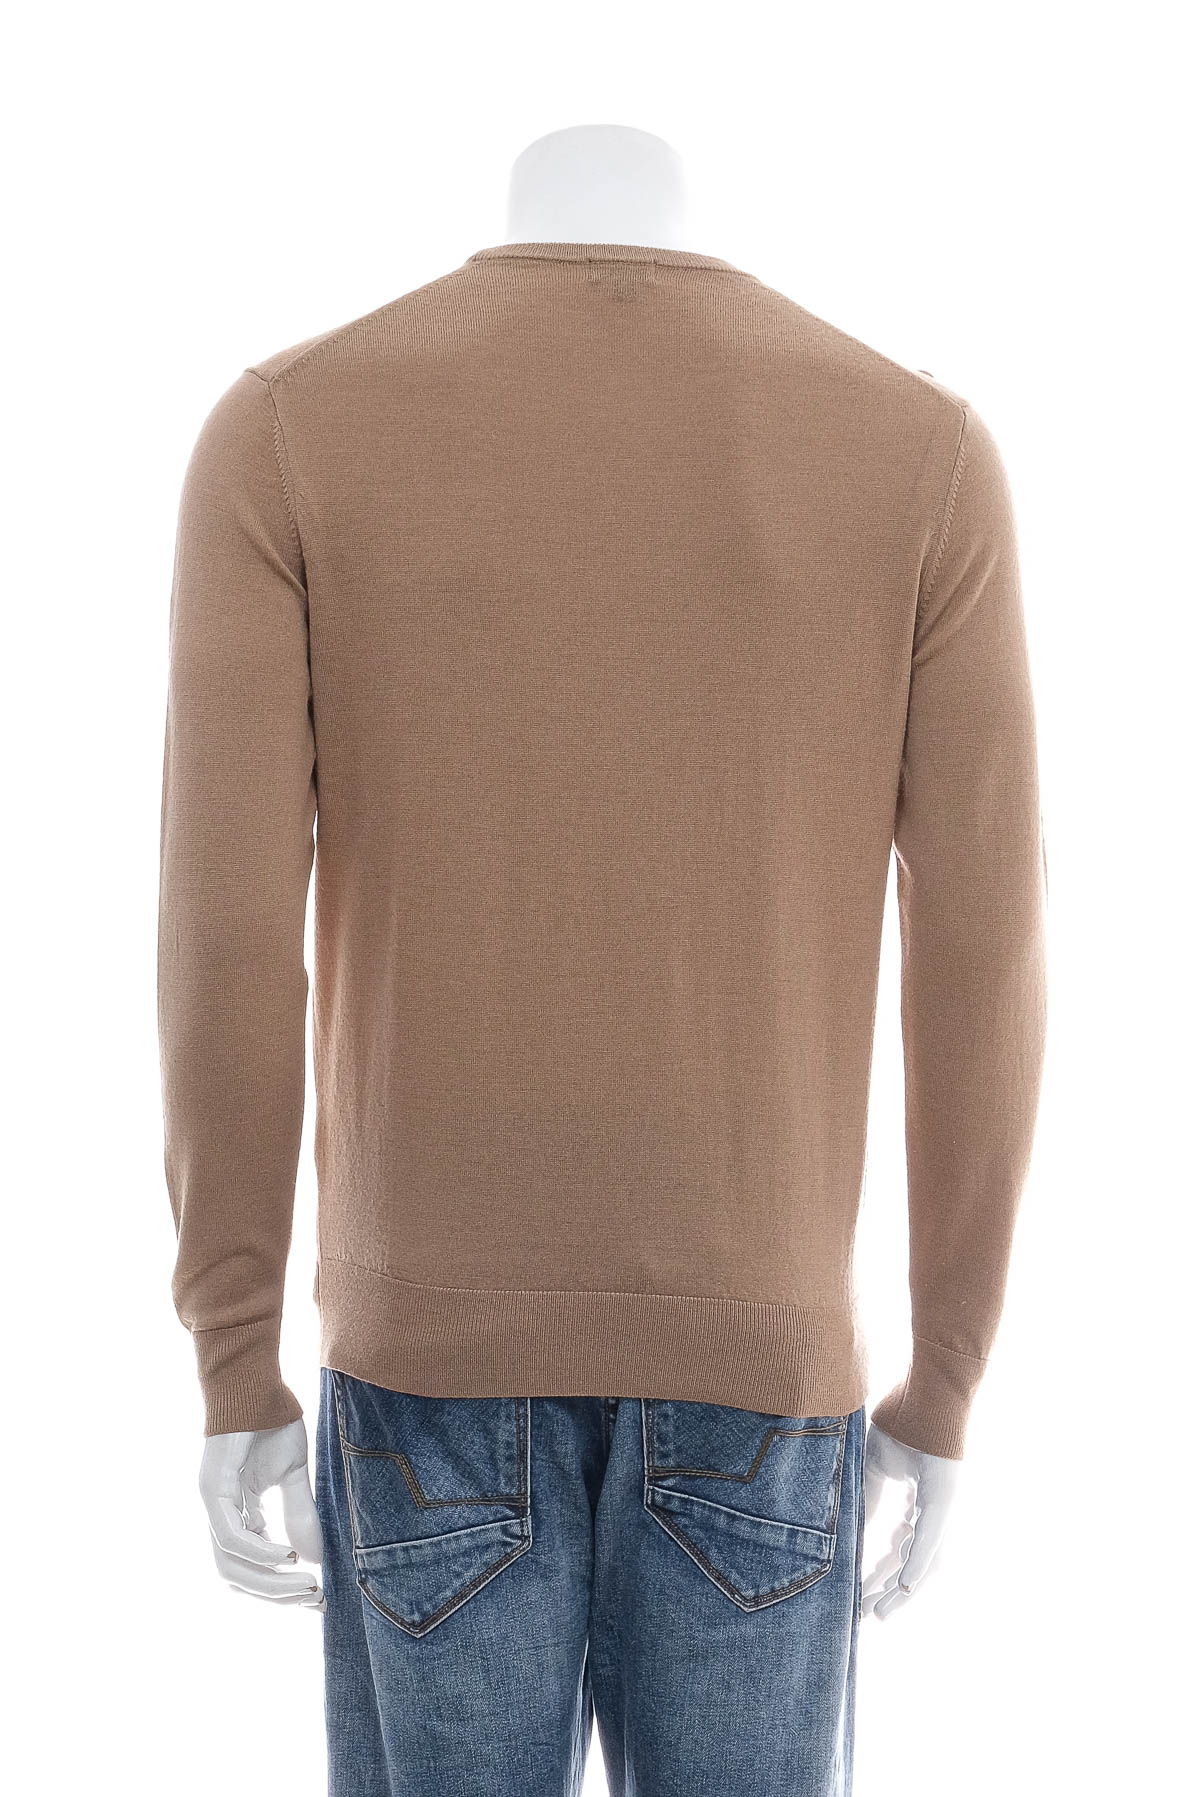 Men's sweater - UNIQLO - 1